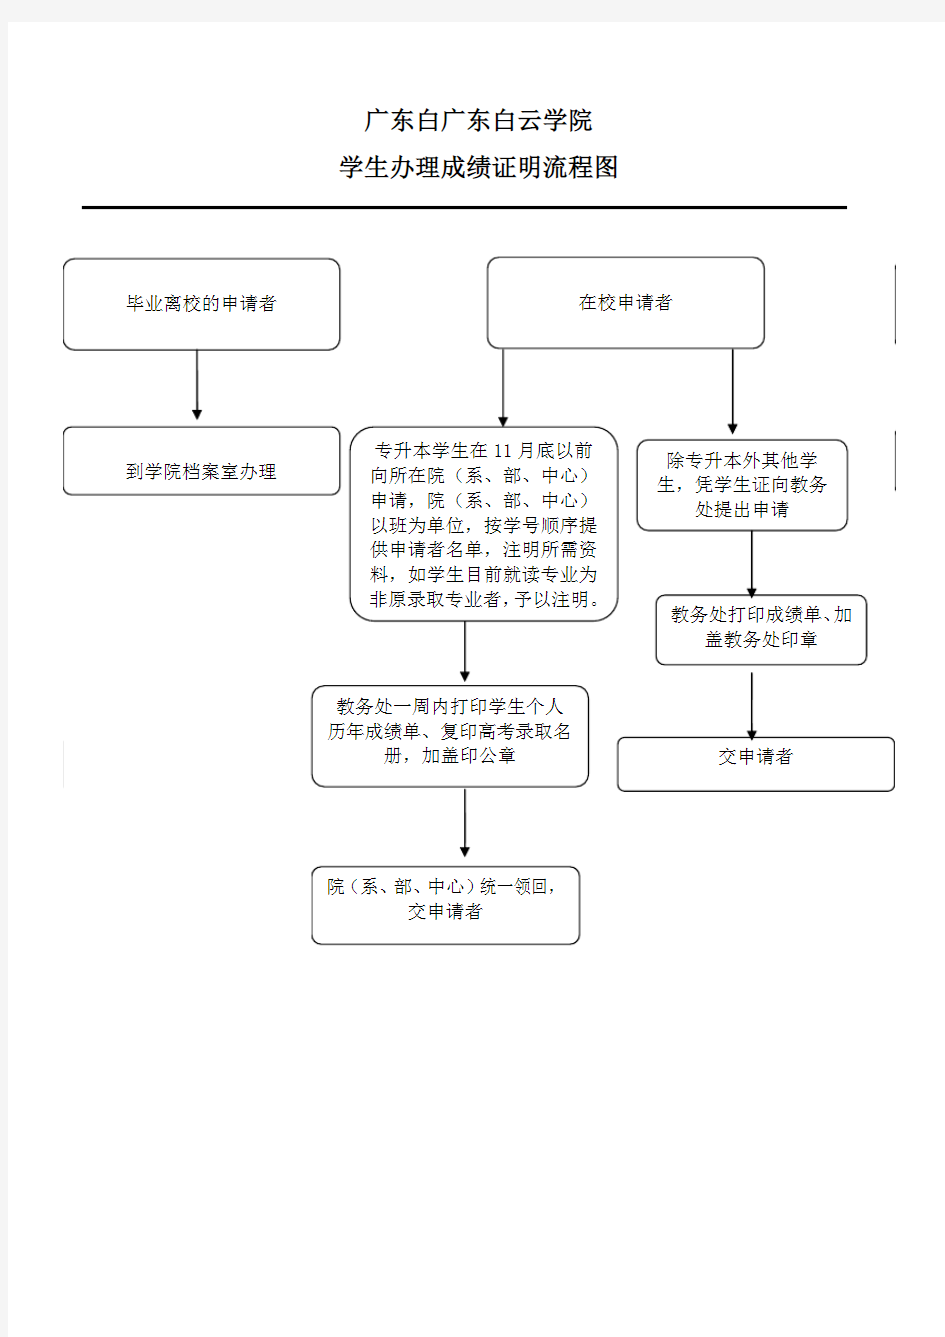 广东白广东白云学院 学生办理成绩证明流程图